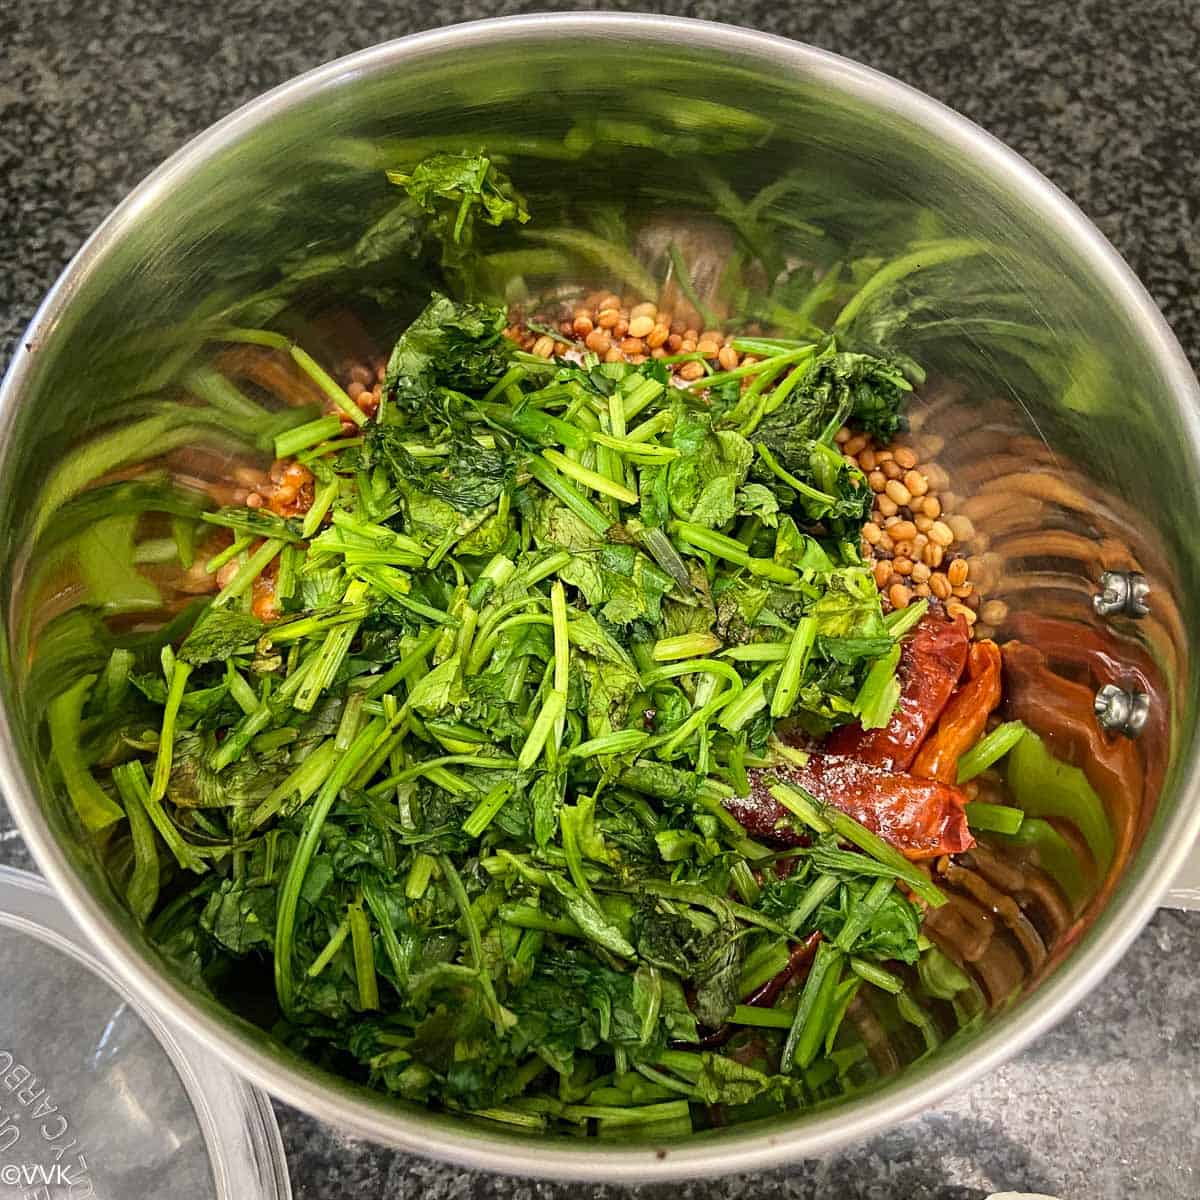 adding the cilantro chutney ingredients to the mixer jar